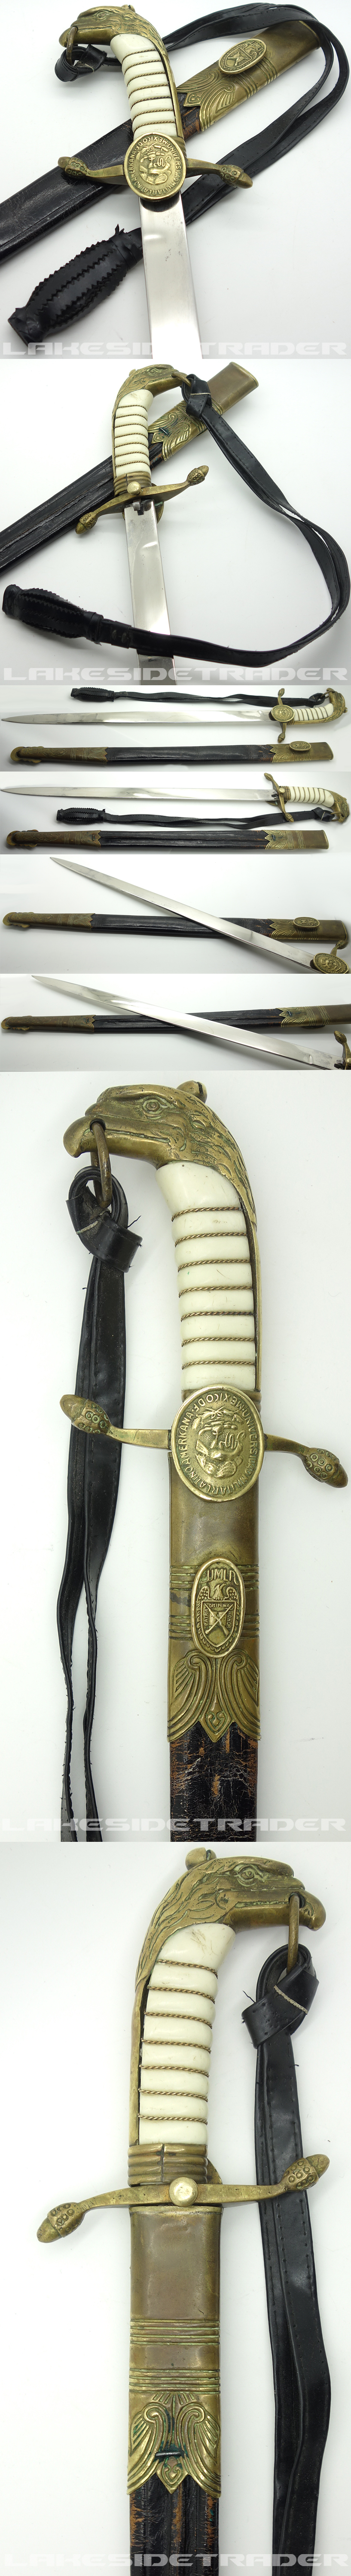 A Mexican Naval Cadet Dagger (Naval Dirk) by Carl Eickhorn